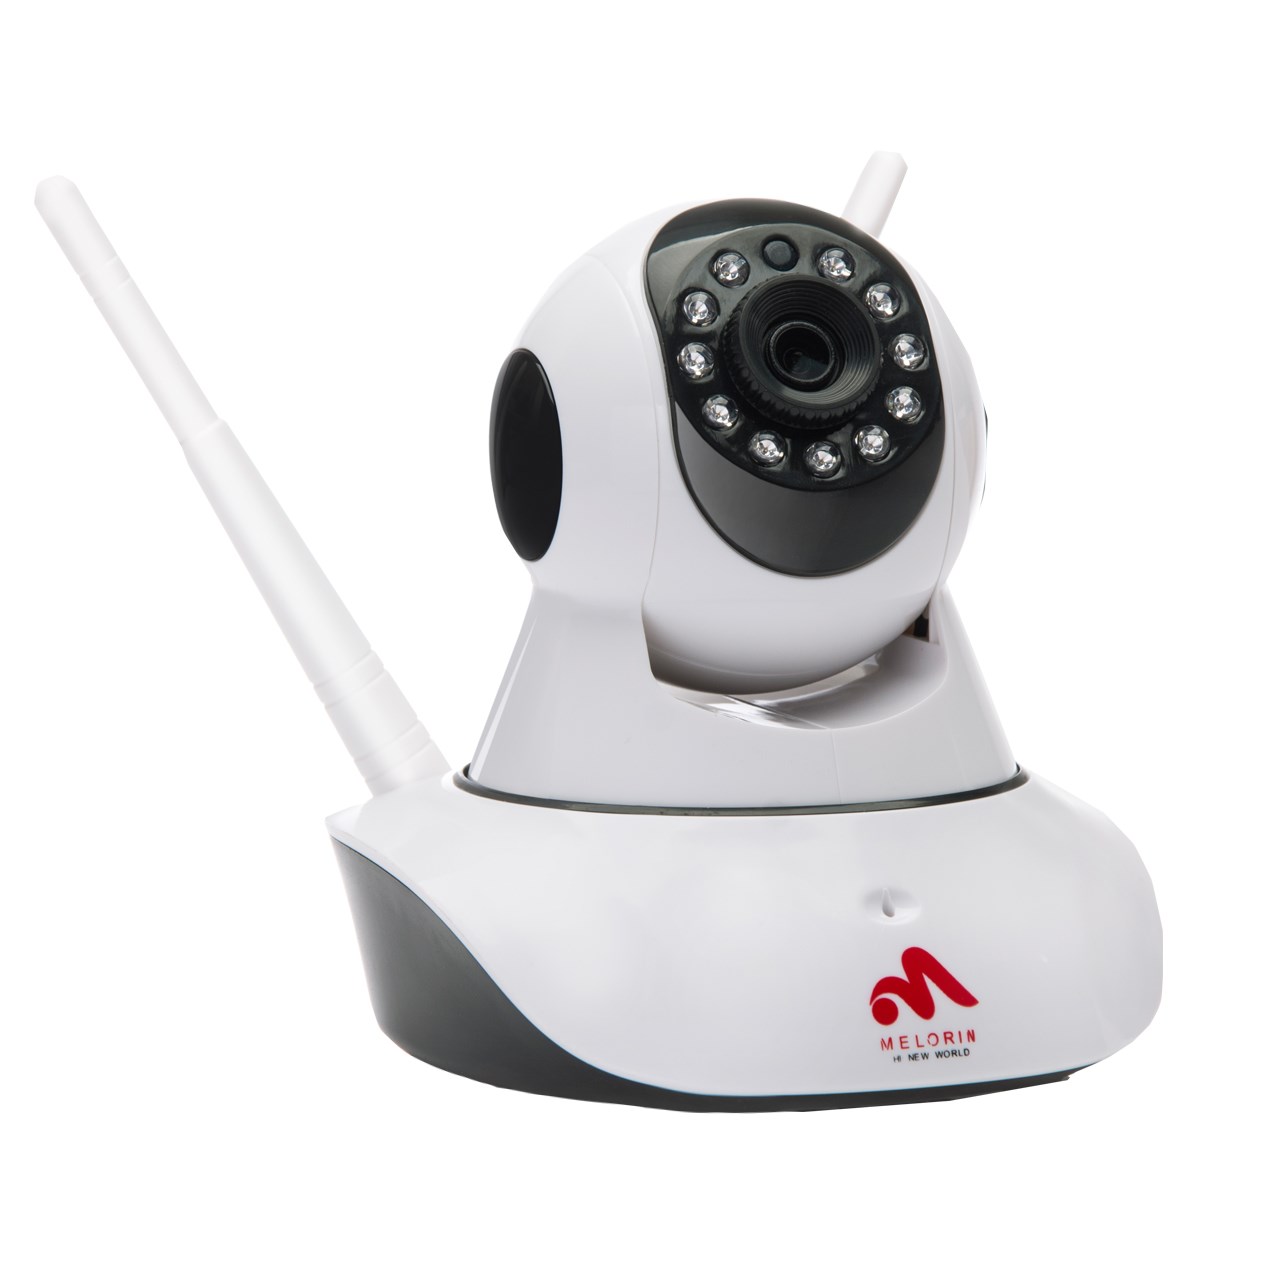 خرید اینترنتی                     دوربین حفاظتی تحت شبکه ملورین مدل M-292W-1M-ZY